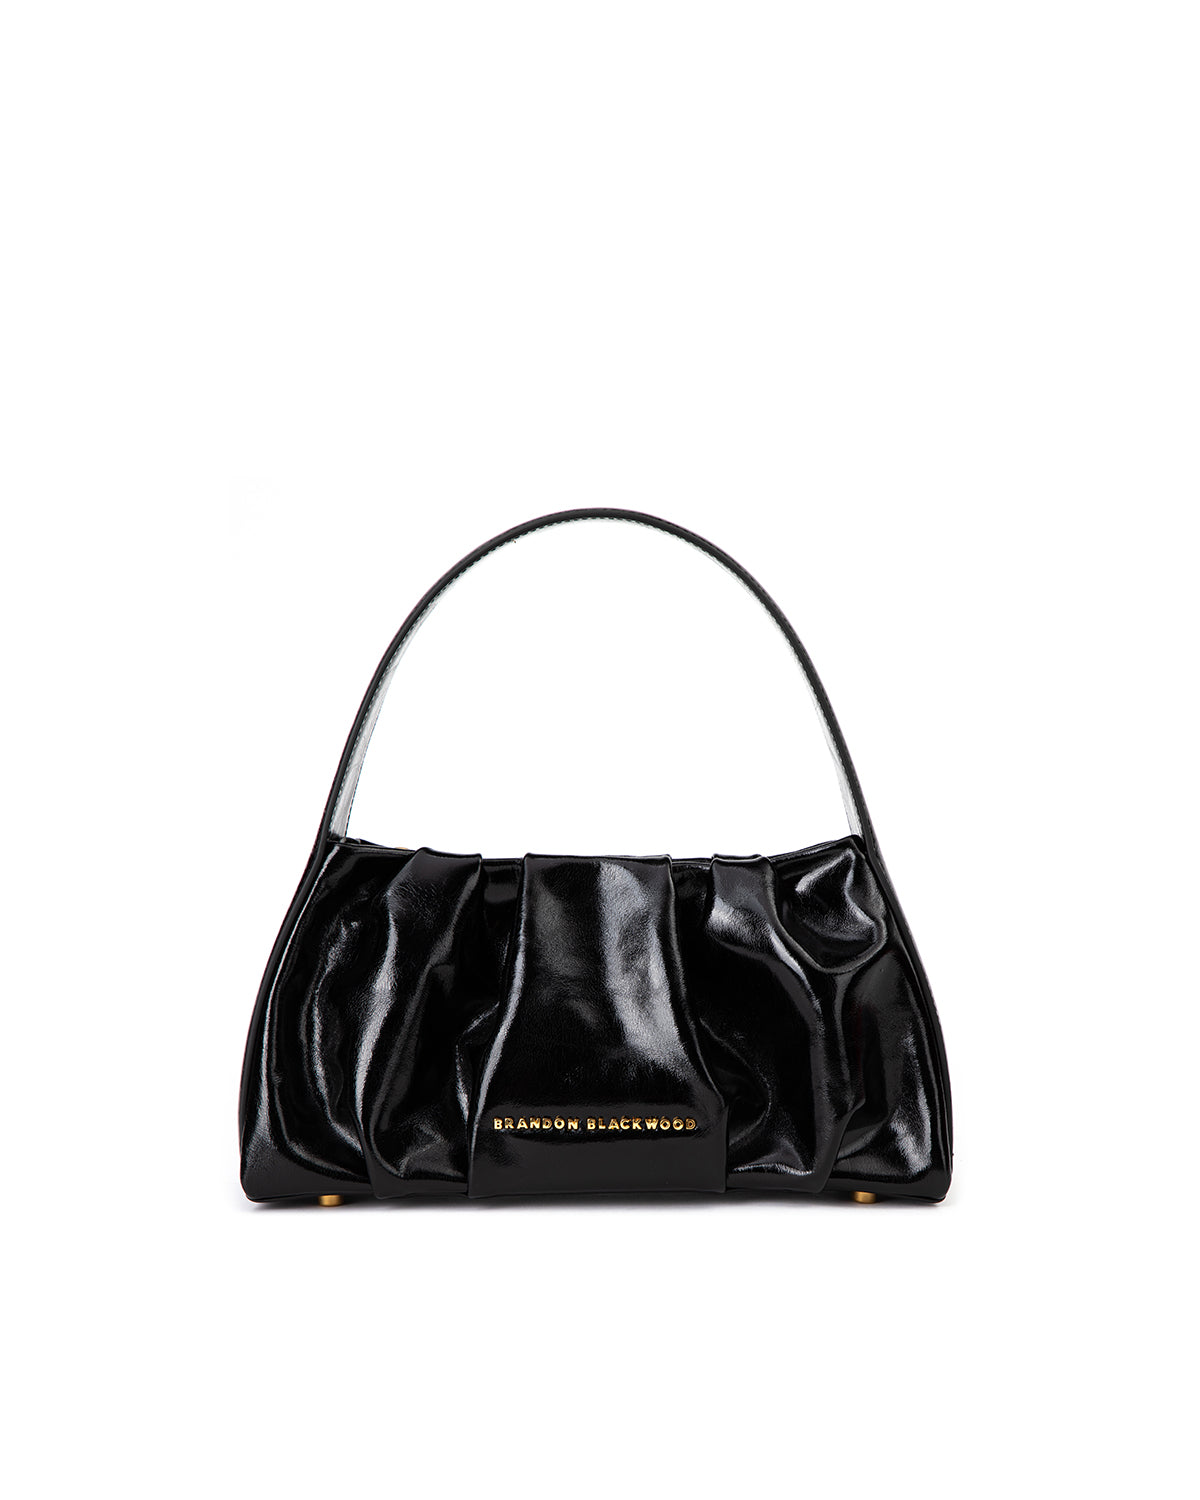 Brandon Blackwood New York - De La Cruz Bag - Black Oil Leather